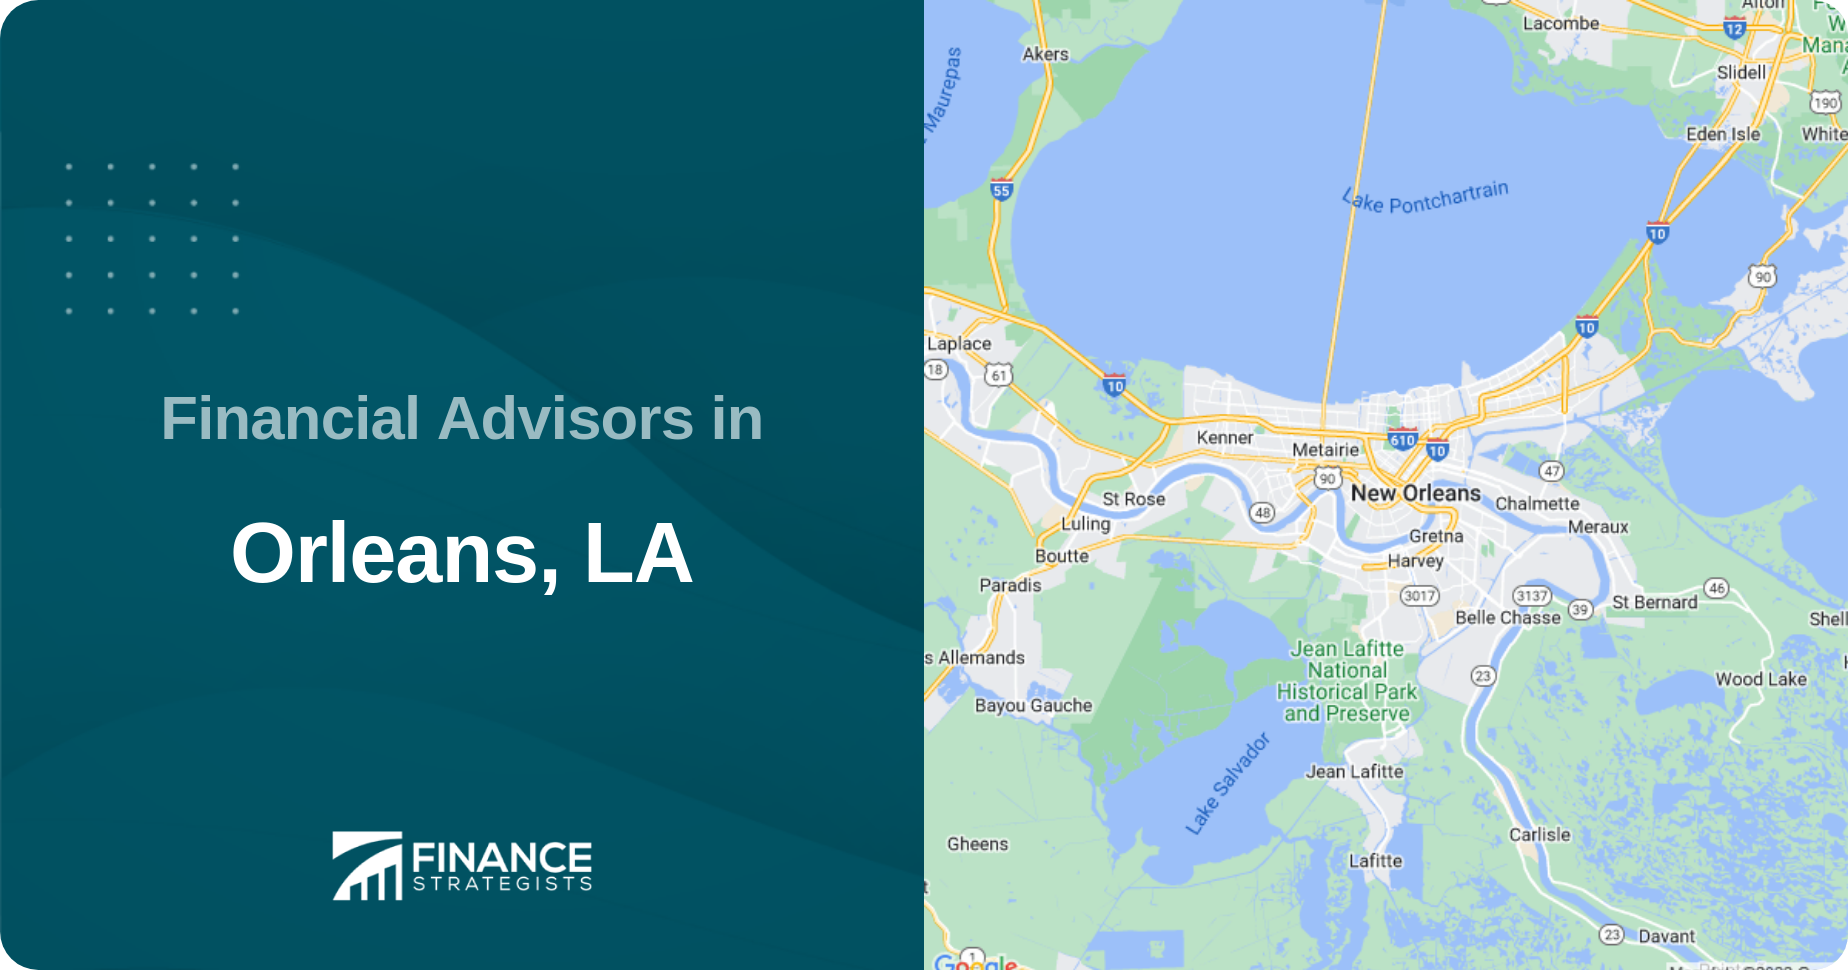 Financial Advisors in Orleans, LA